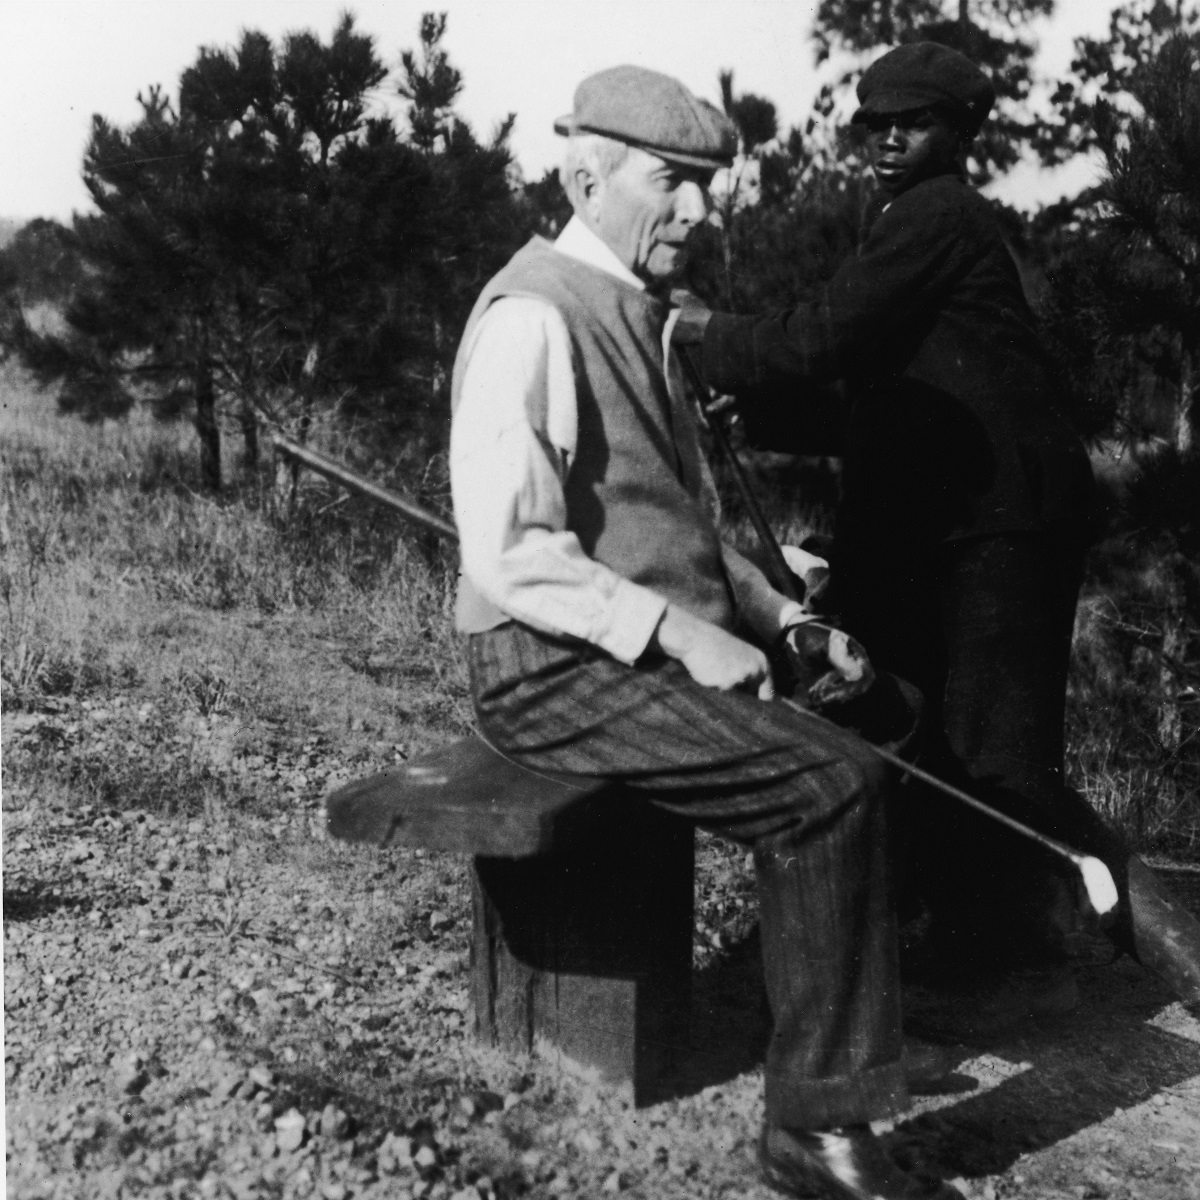 John D. Rockefeller, primul miliardar din SUA, la o rundă de golf. Stă pe o bîncuță și e ajutat de golf caddy de atunci, un băiat îmbrăcat în negru